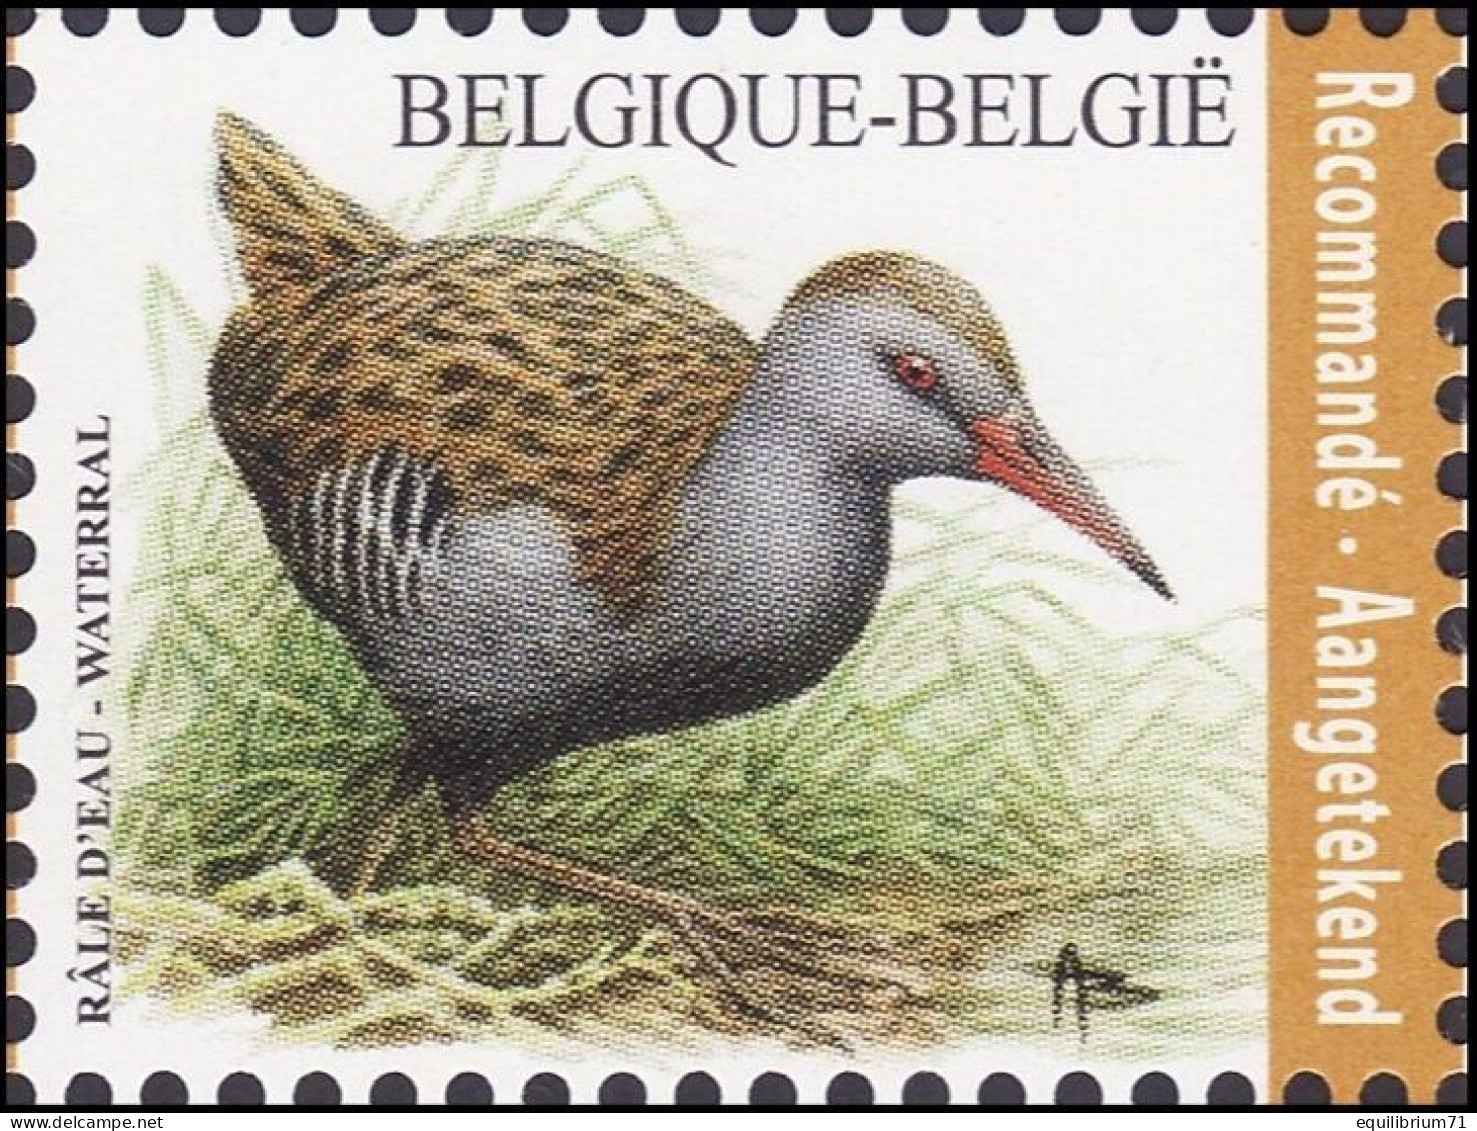 4671** - Râle D'eau / Water Rammelaar - BUZIN - BELGIQUE / BELGIË / BELGIEN - RECOMMANDÉ / AANGETEKEND - Cranes And Other Gruiformes